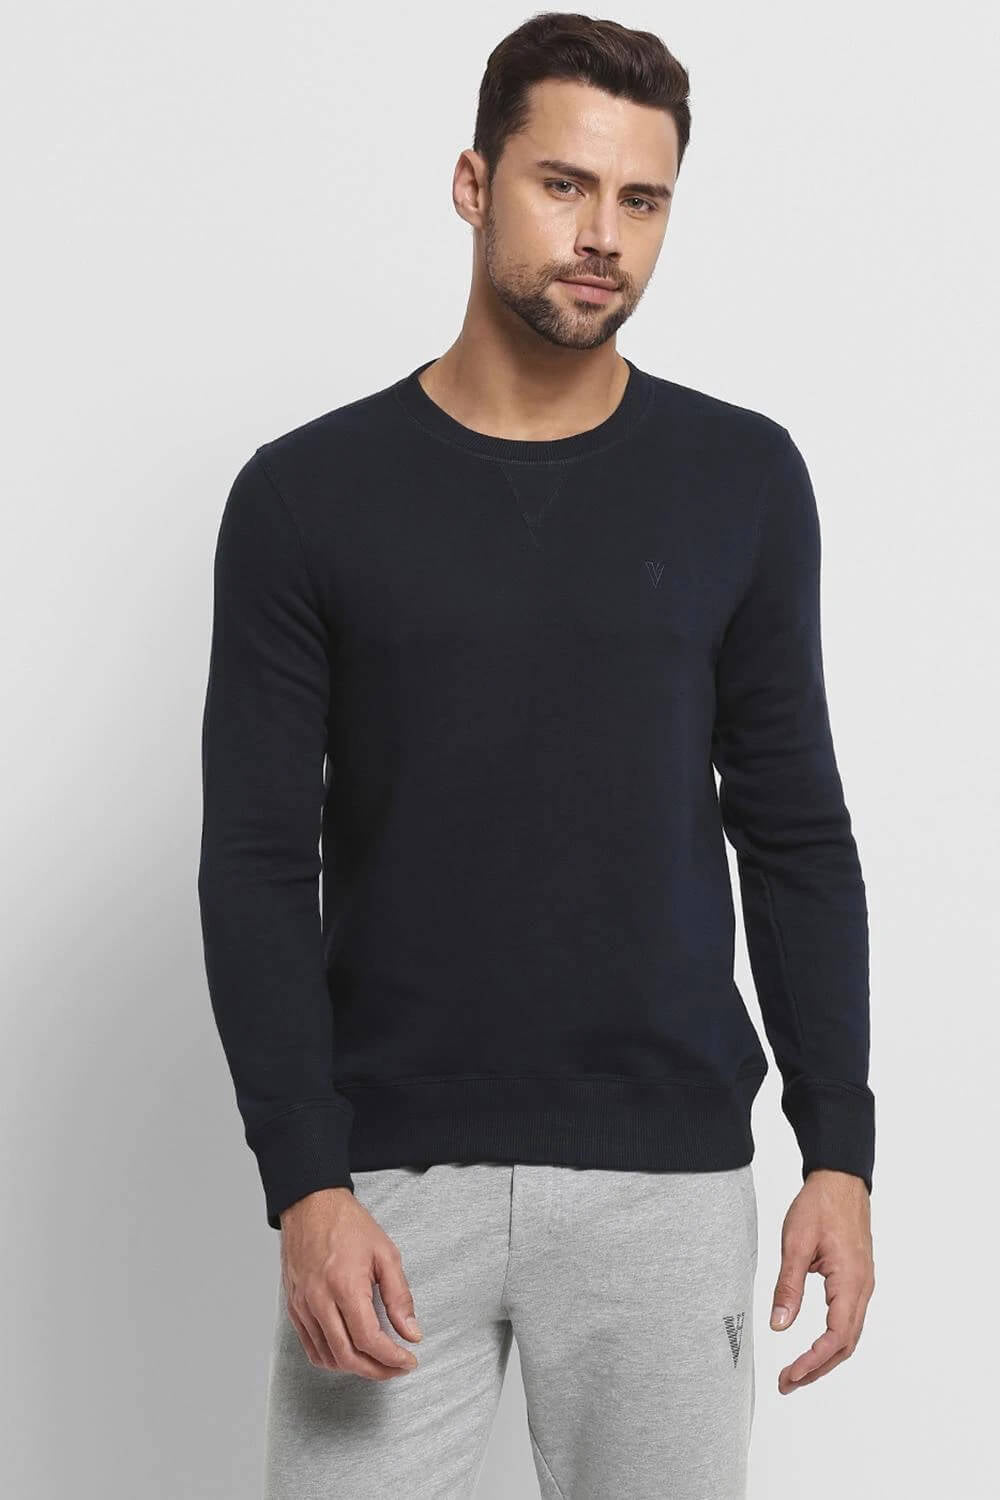 Van Heusen Navy Sweatshirt for Men #60076